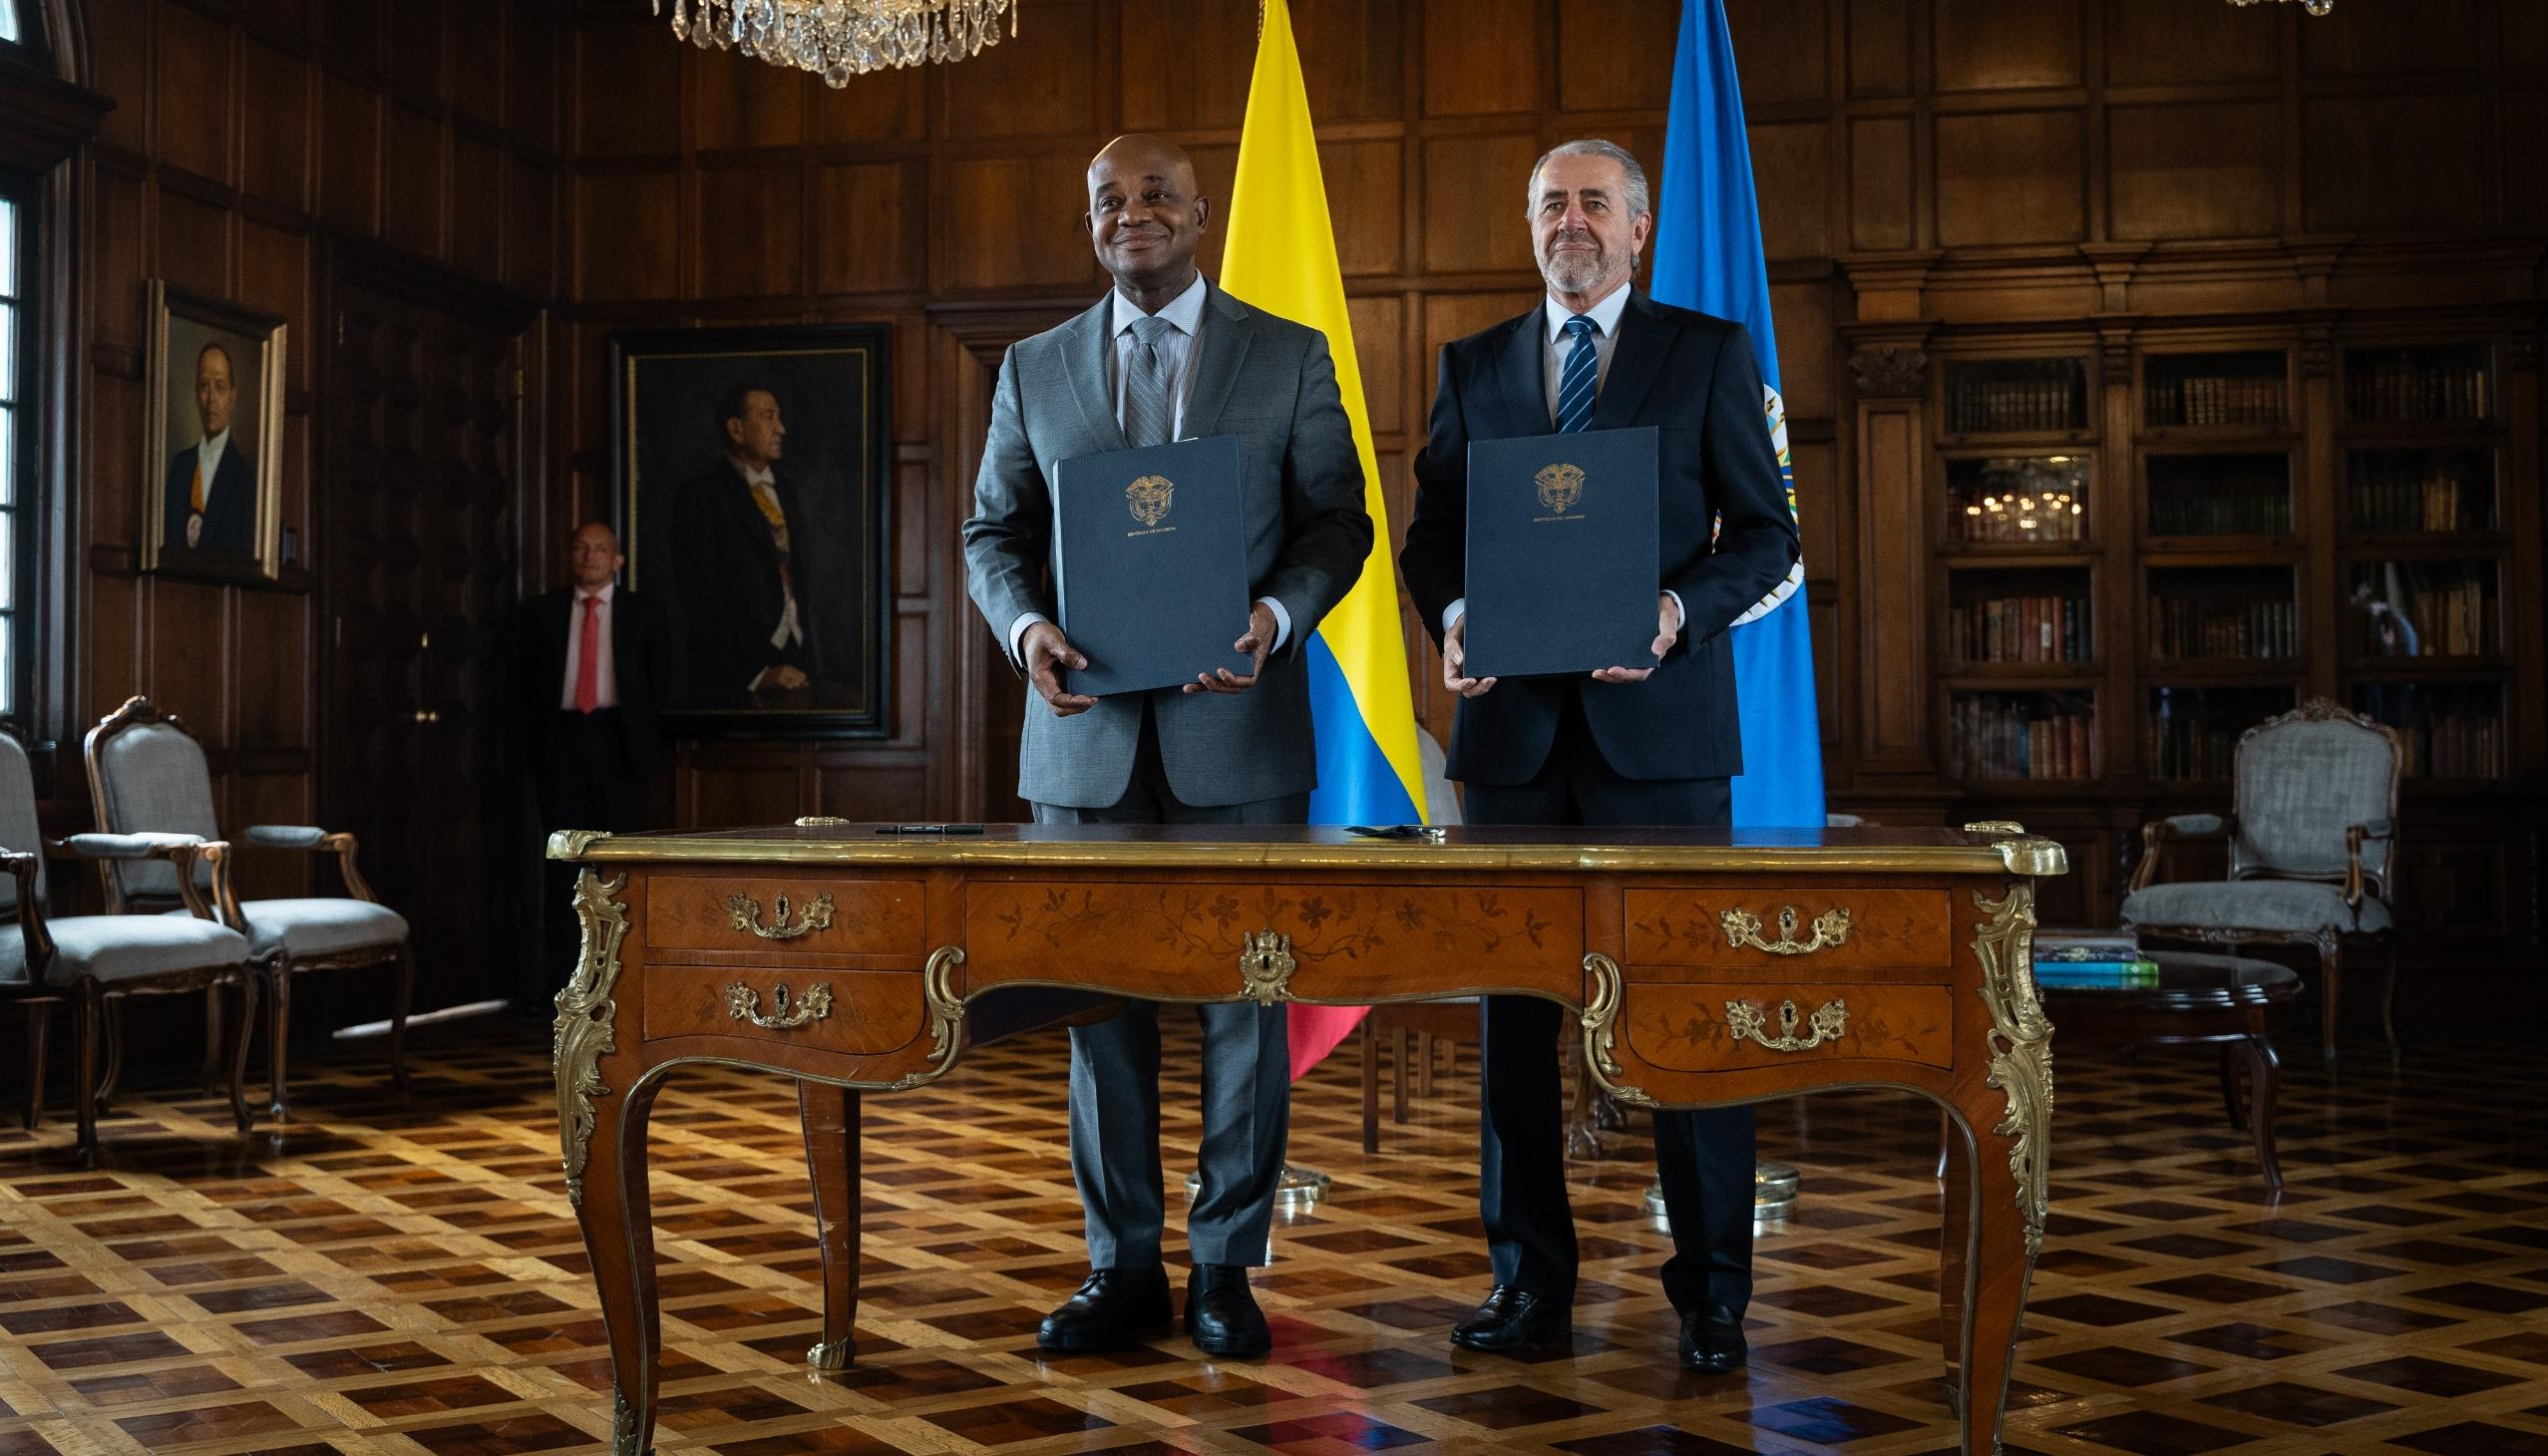  El Canciller Murillo y el jefe de la misión de apoyo al proceso de paz en Colombia de la OEA, y Roberto Menéndez, firmaron este jueves un nuevo convenio de acompañamiento.